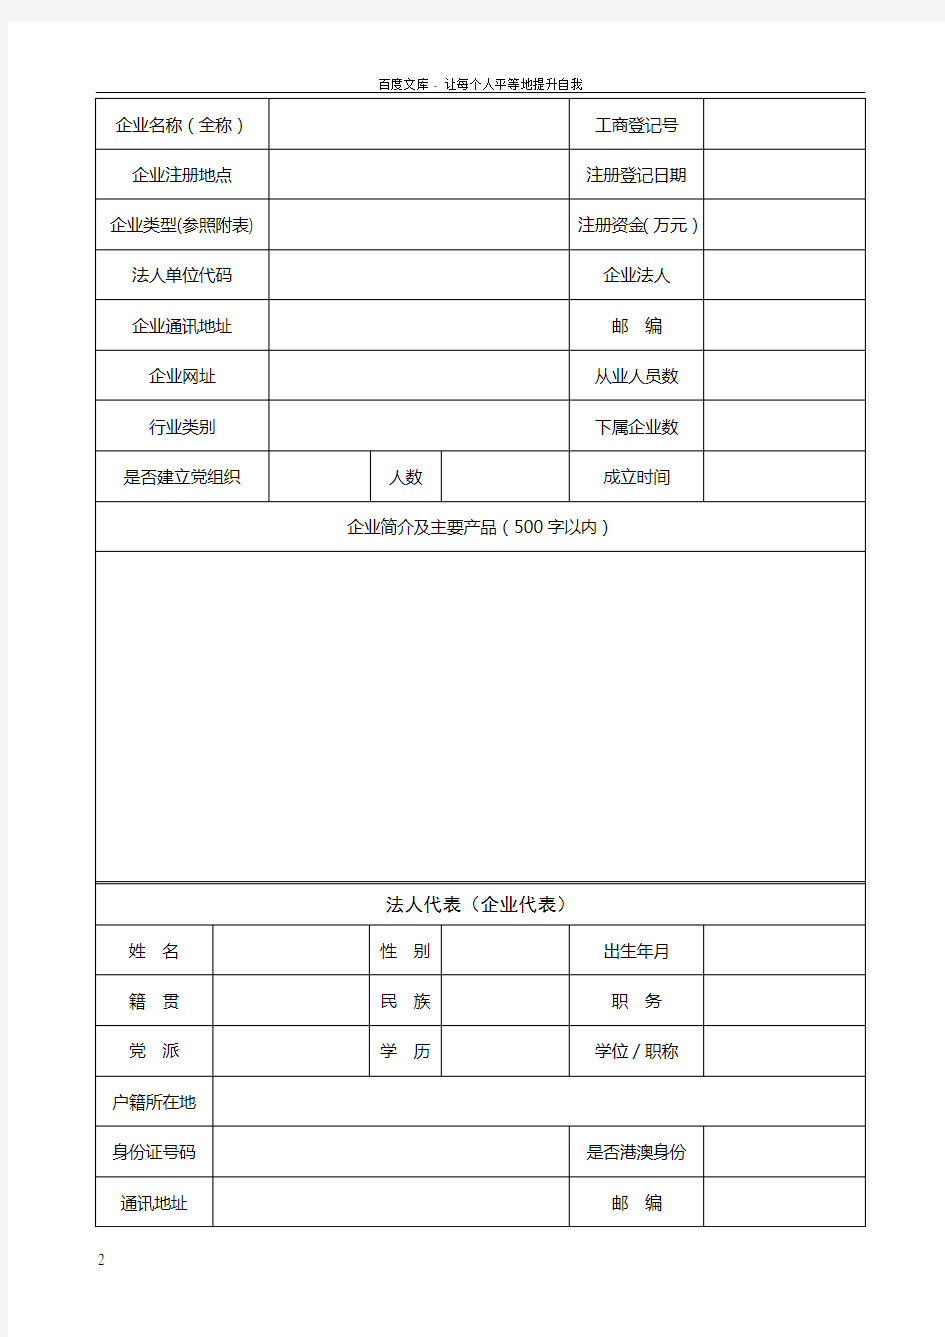 上海市工商联企业会员登记表